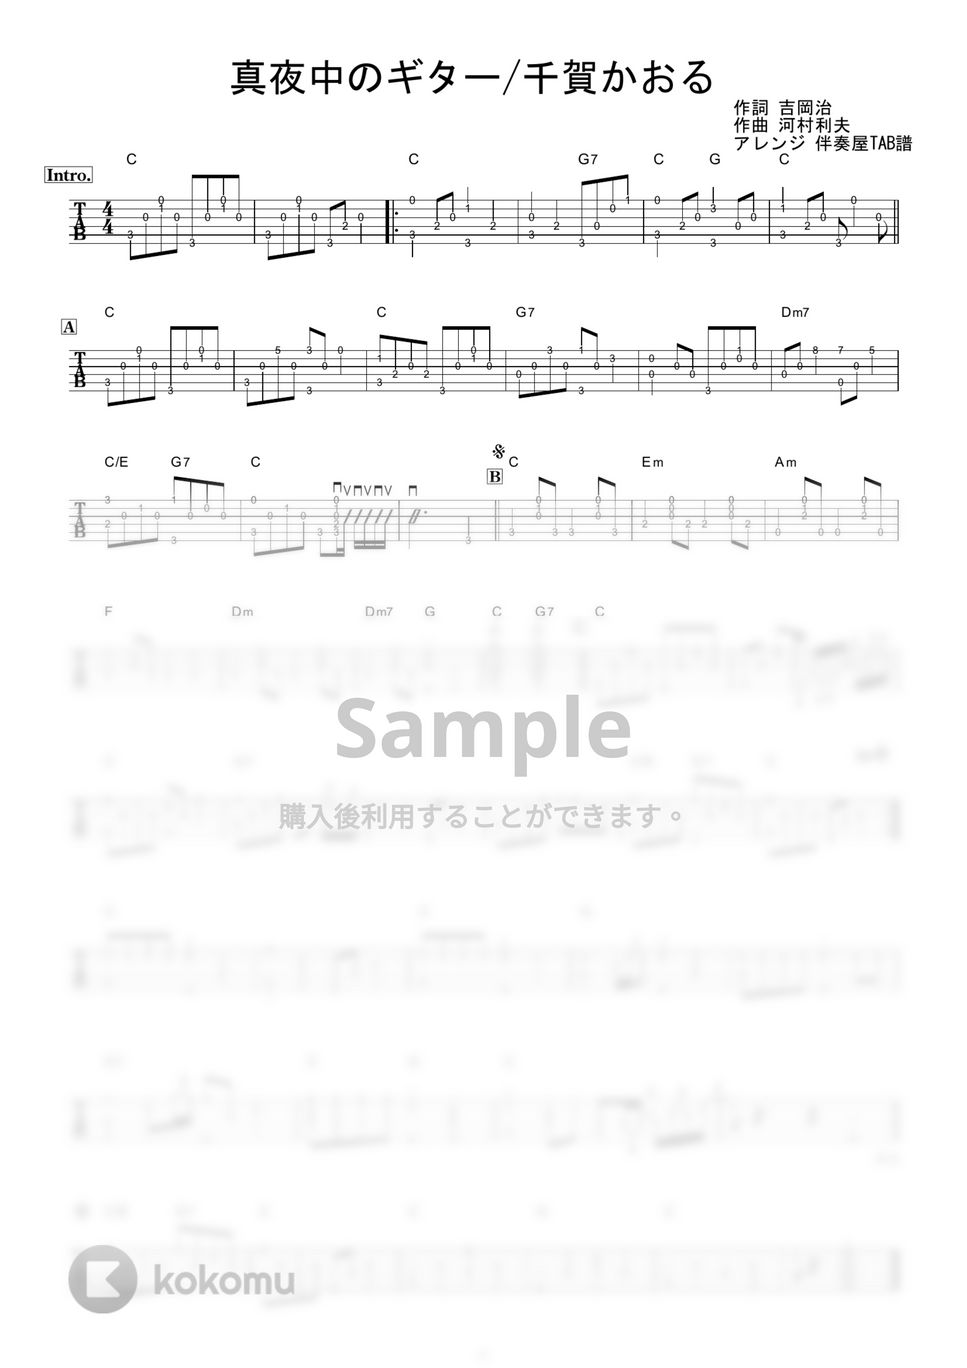 千賀かほる - 真夜中のギター (ギター伴奏/イントロ・間奏ソロギター) by 伴奏屋TAB譜